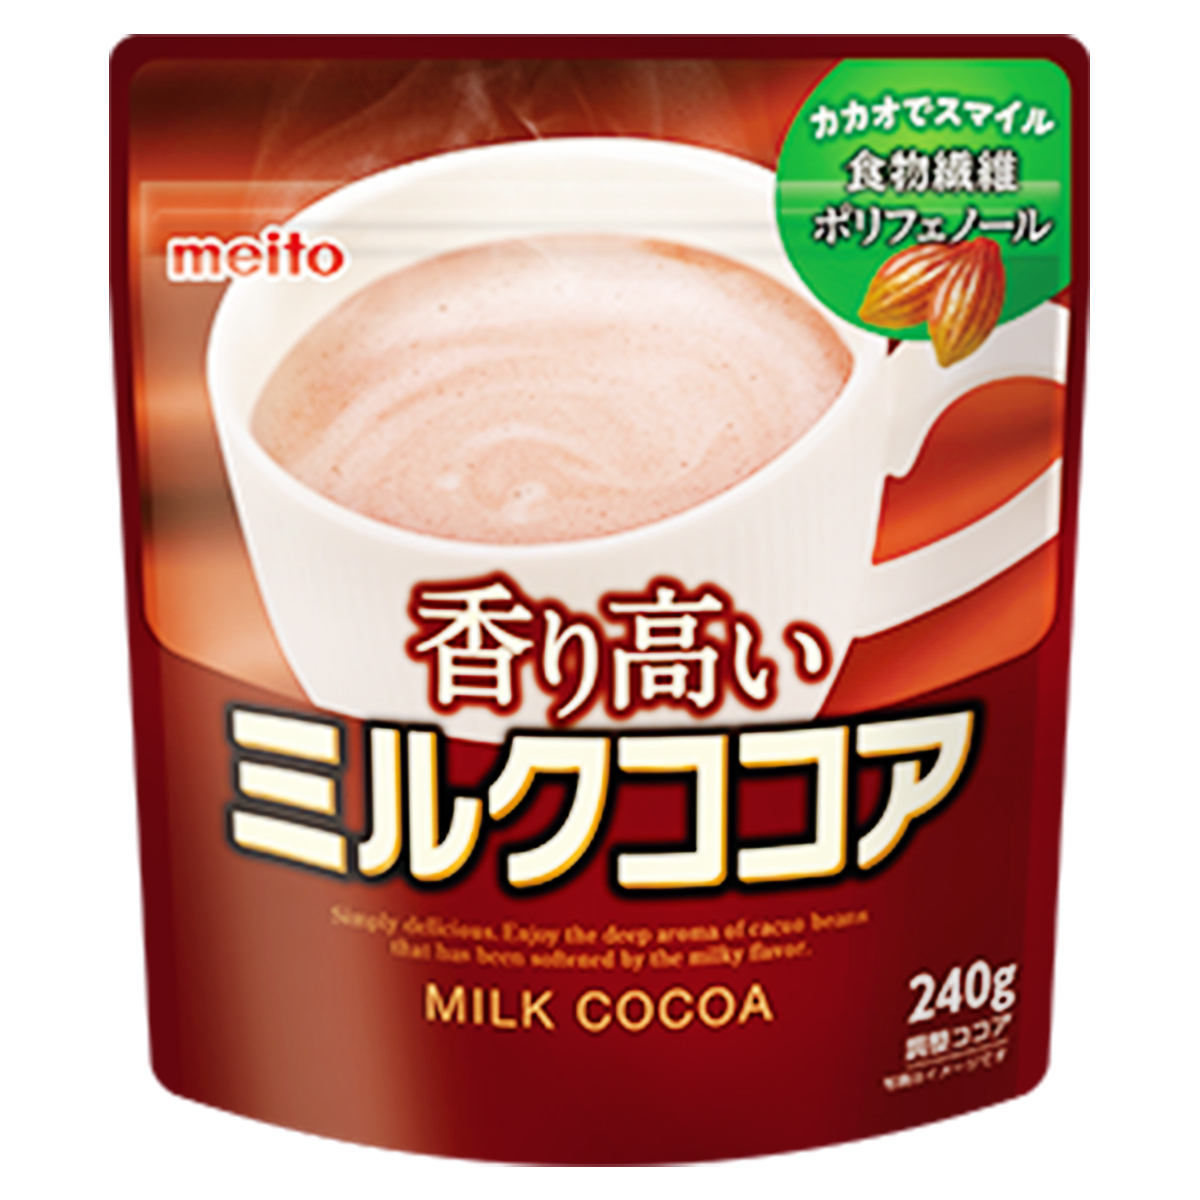 名糖 香り高いミルクココア 240g×1個の商品画像